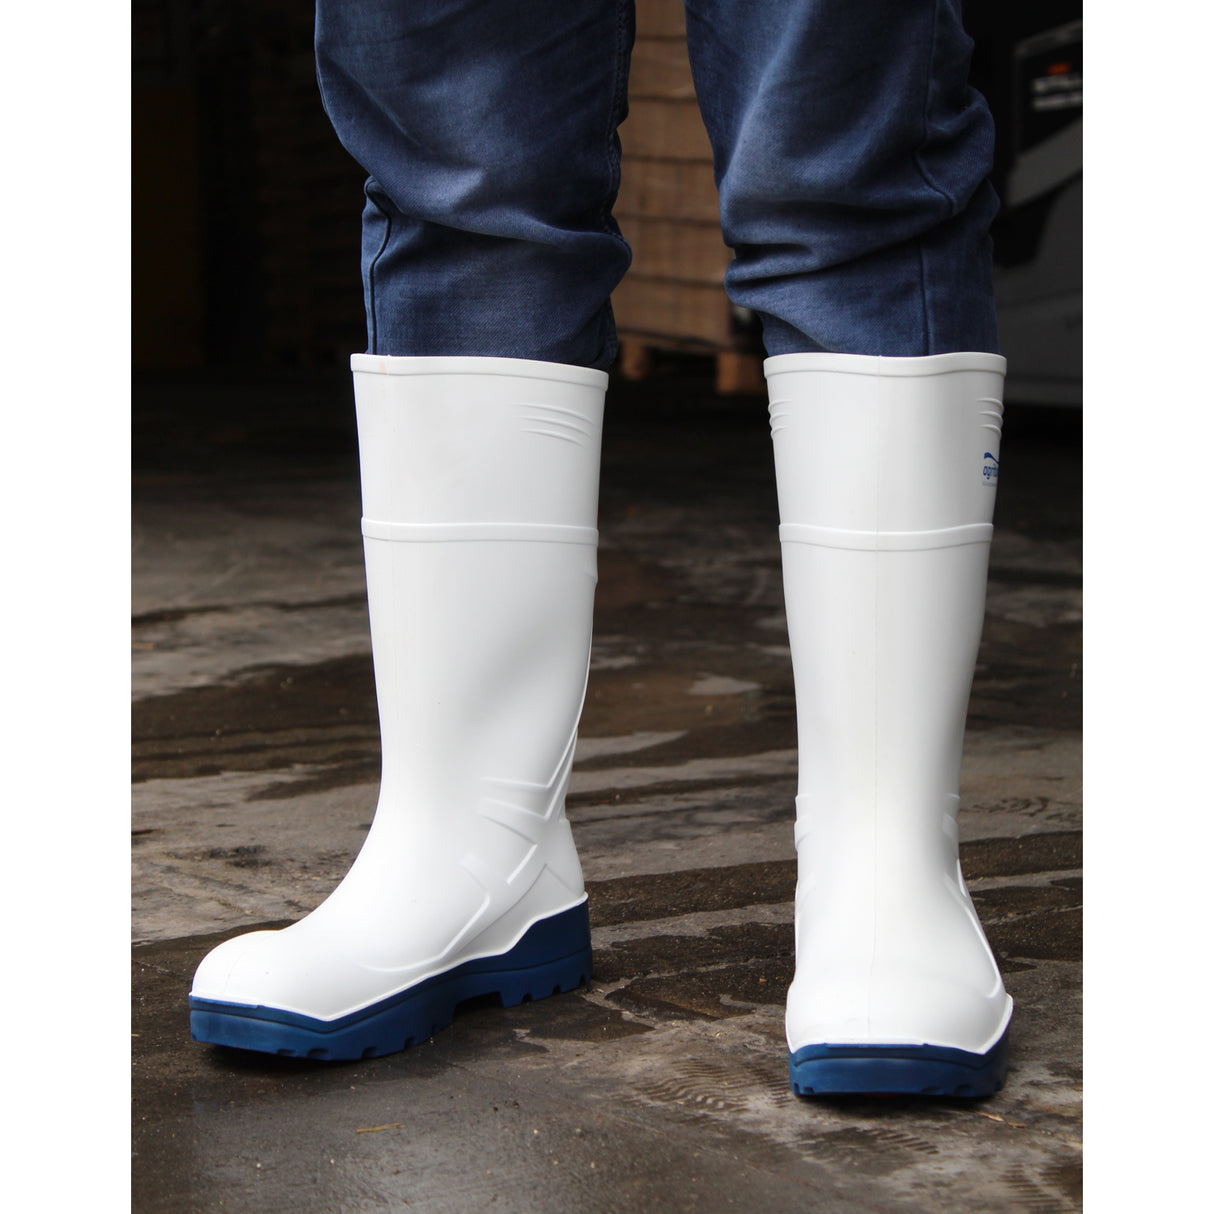 Stivali Agritura Scarpe da Lavoro S4 Alte Bianche in Poliuretano per Protezione Superiore